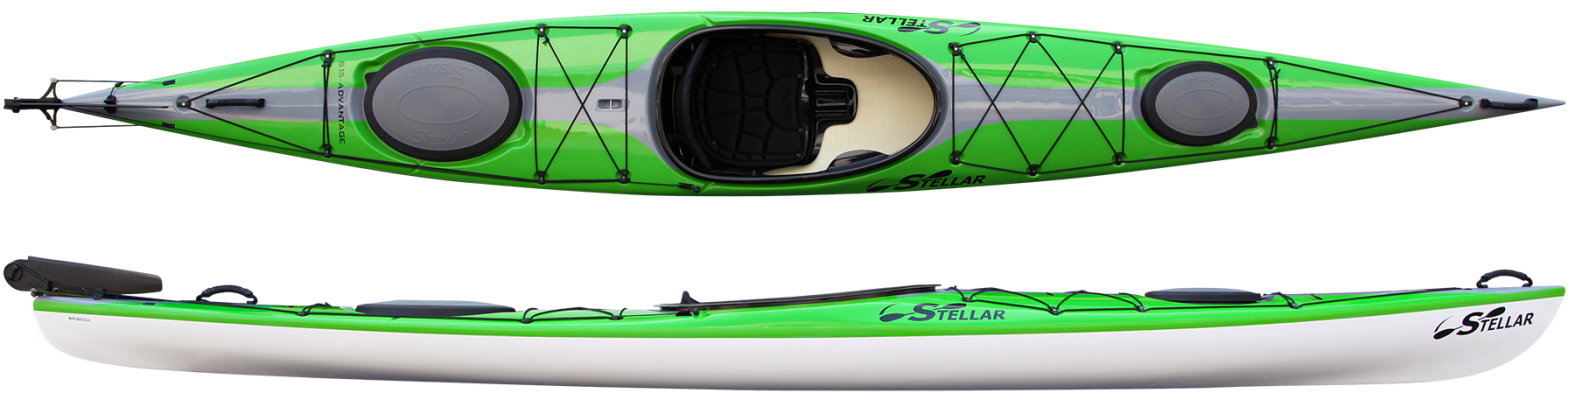 Stellar S15′ Touring Kayak (S15LV)